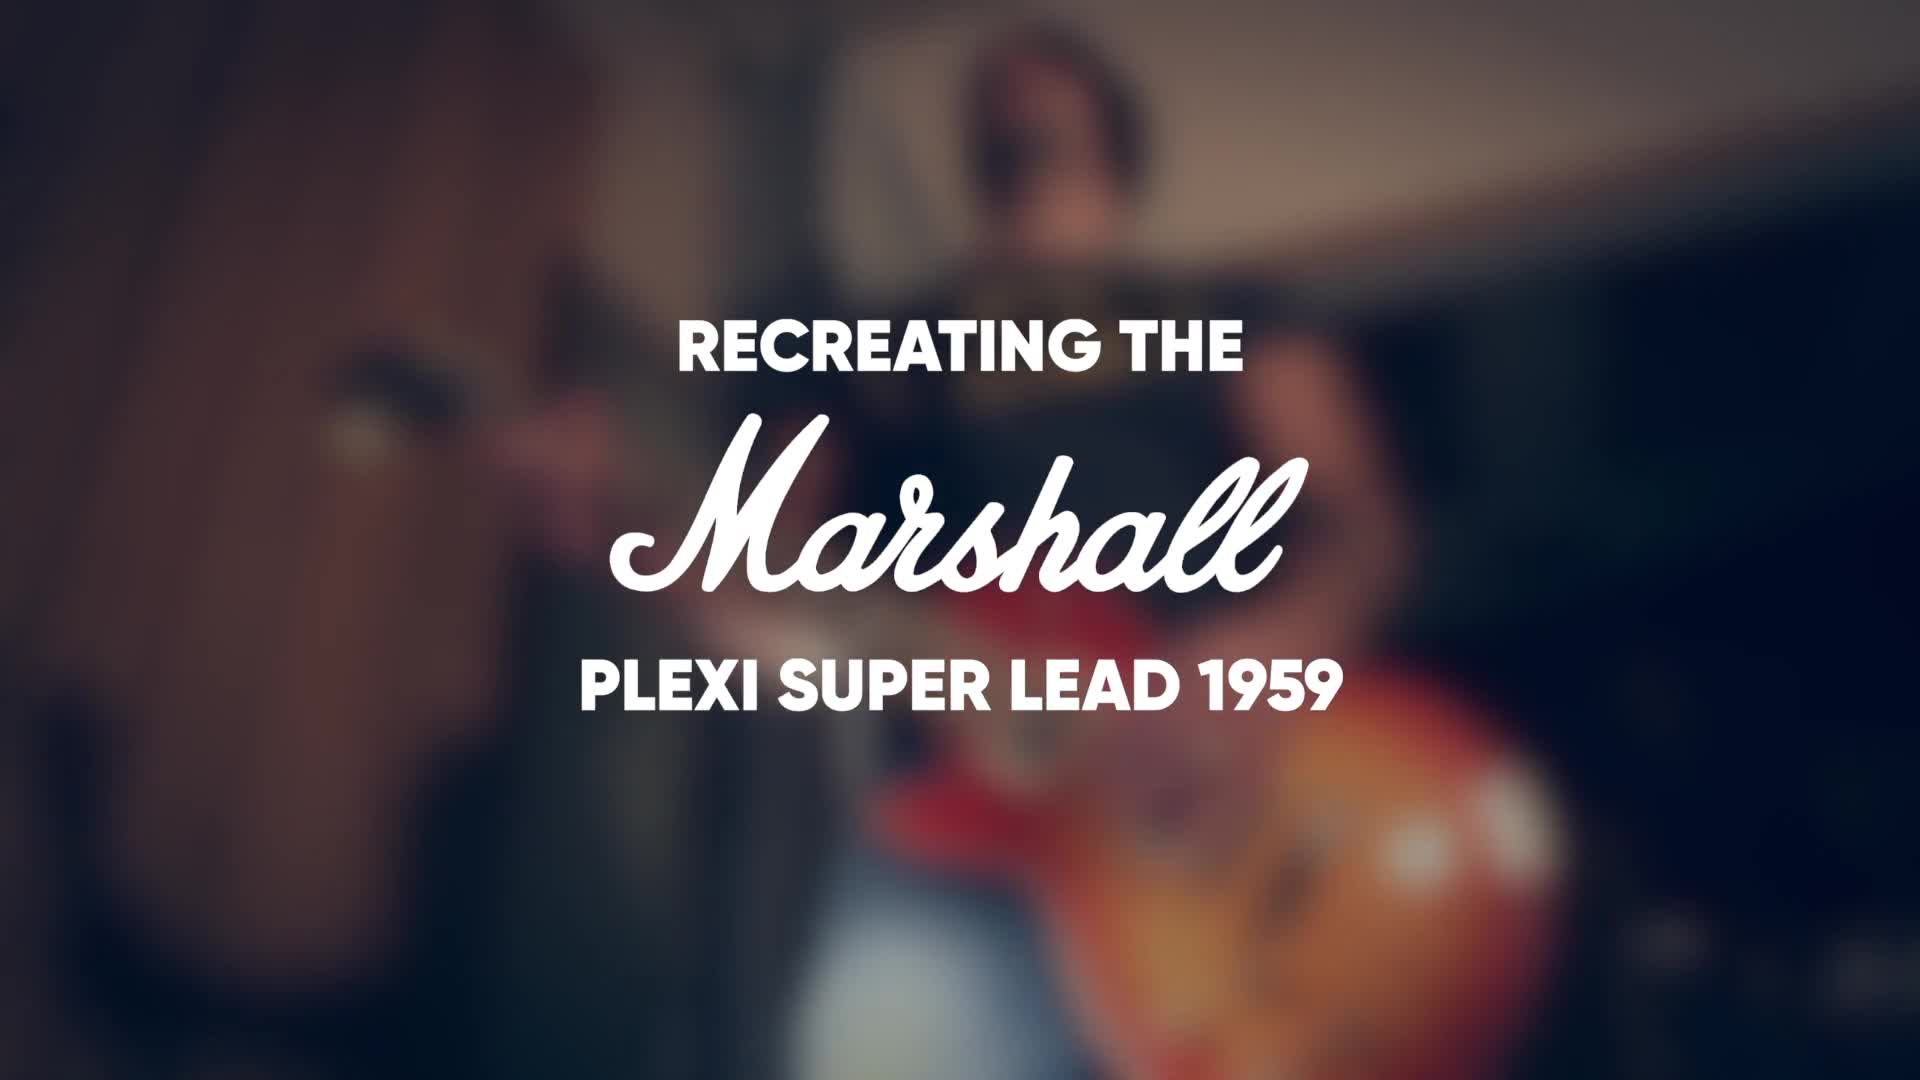 Marshall Plexi Super Lead 1959